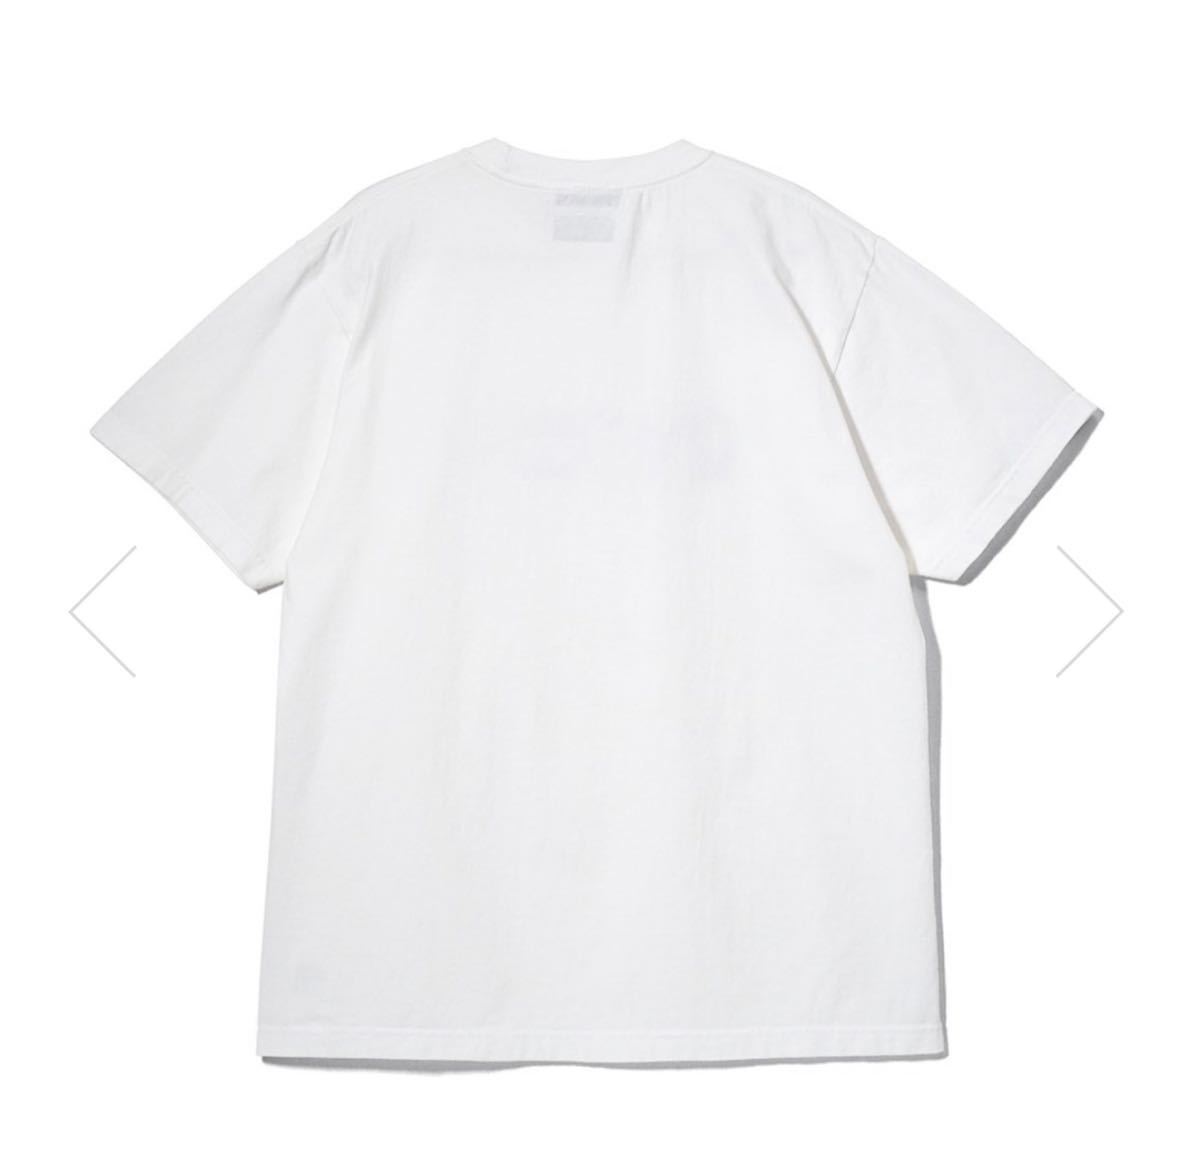 【新品タグ付き】21SS 新品 WIND AND SEA ウィンダンシー FACETASM WDS TEE Tシャツ カットソー 半袖 ファセッタズム WHITE ホワイト 白色